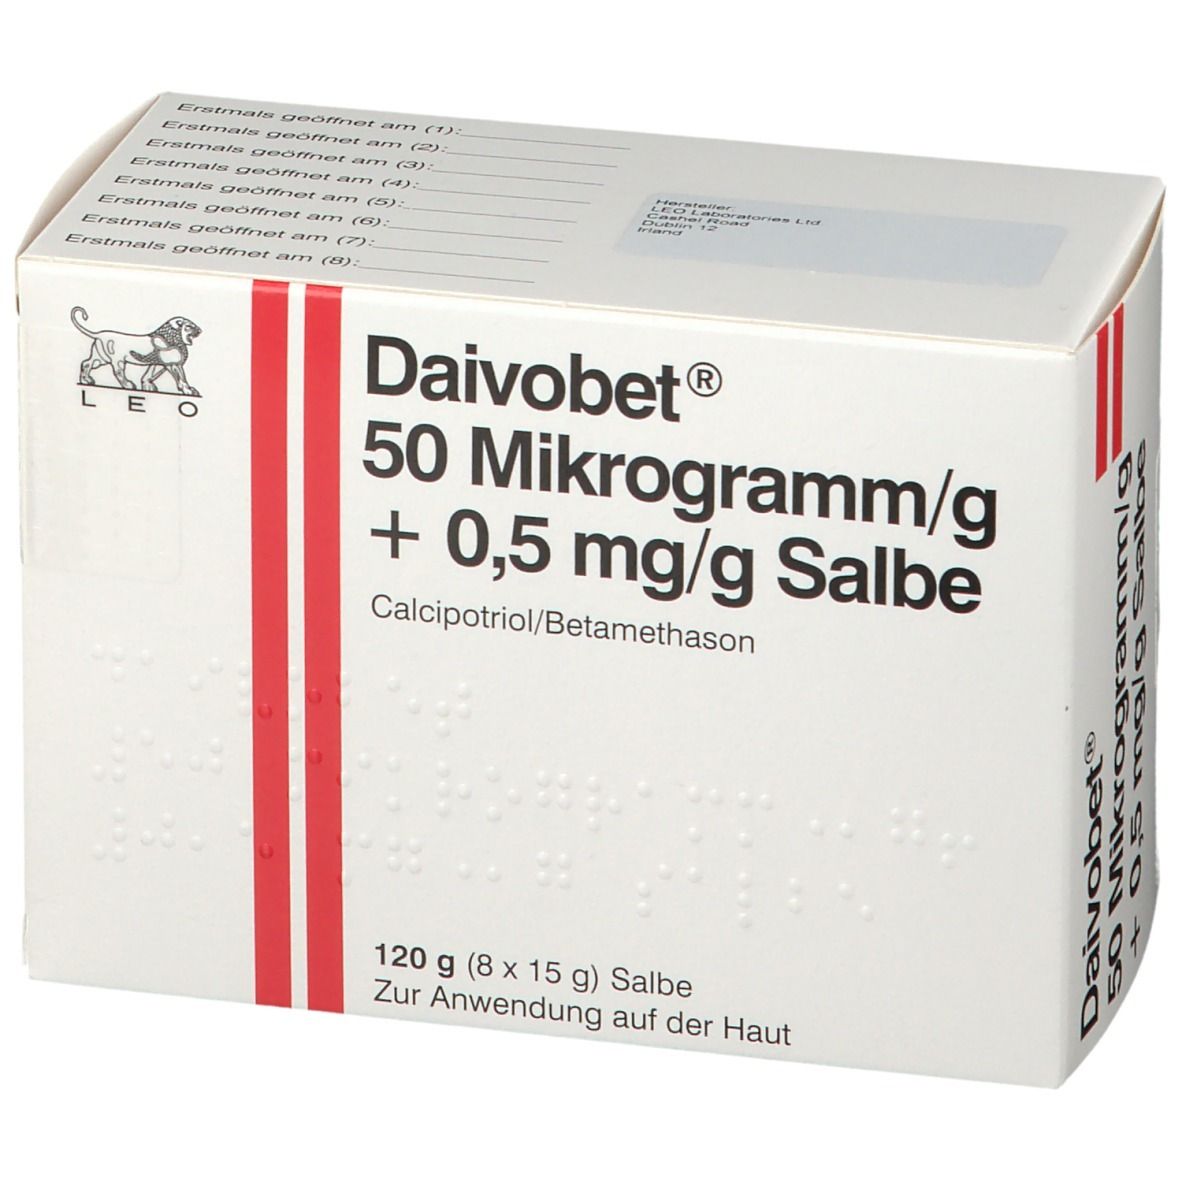 Daivobet 50 µg/g + 0,5 mg/g Salbe